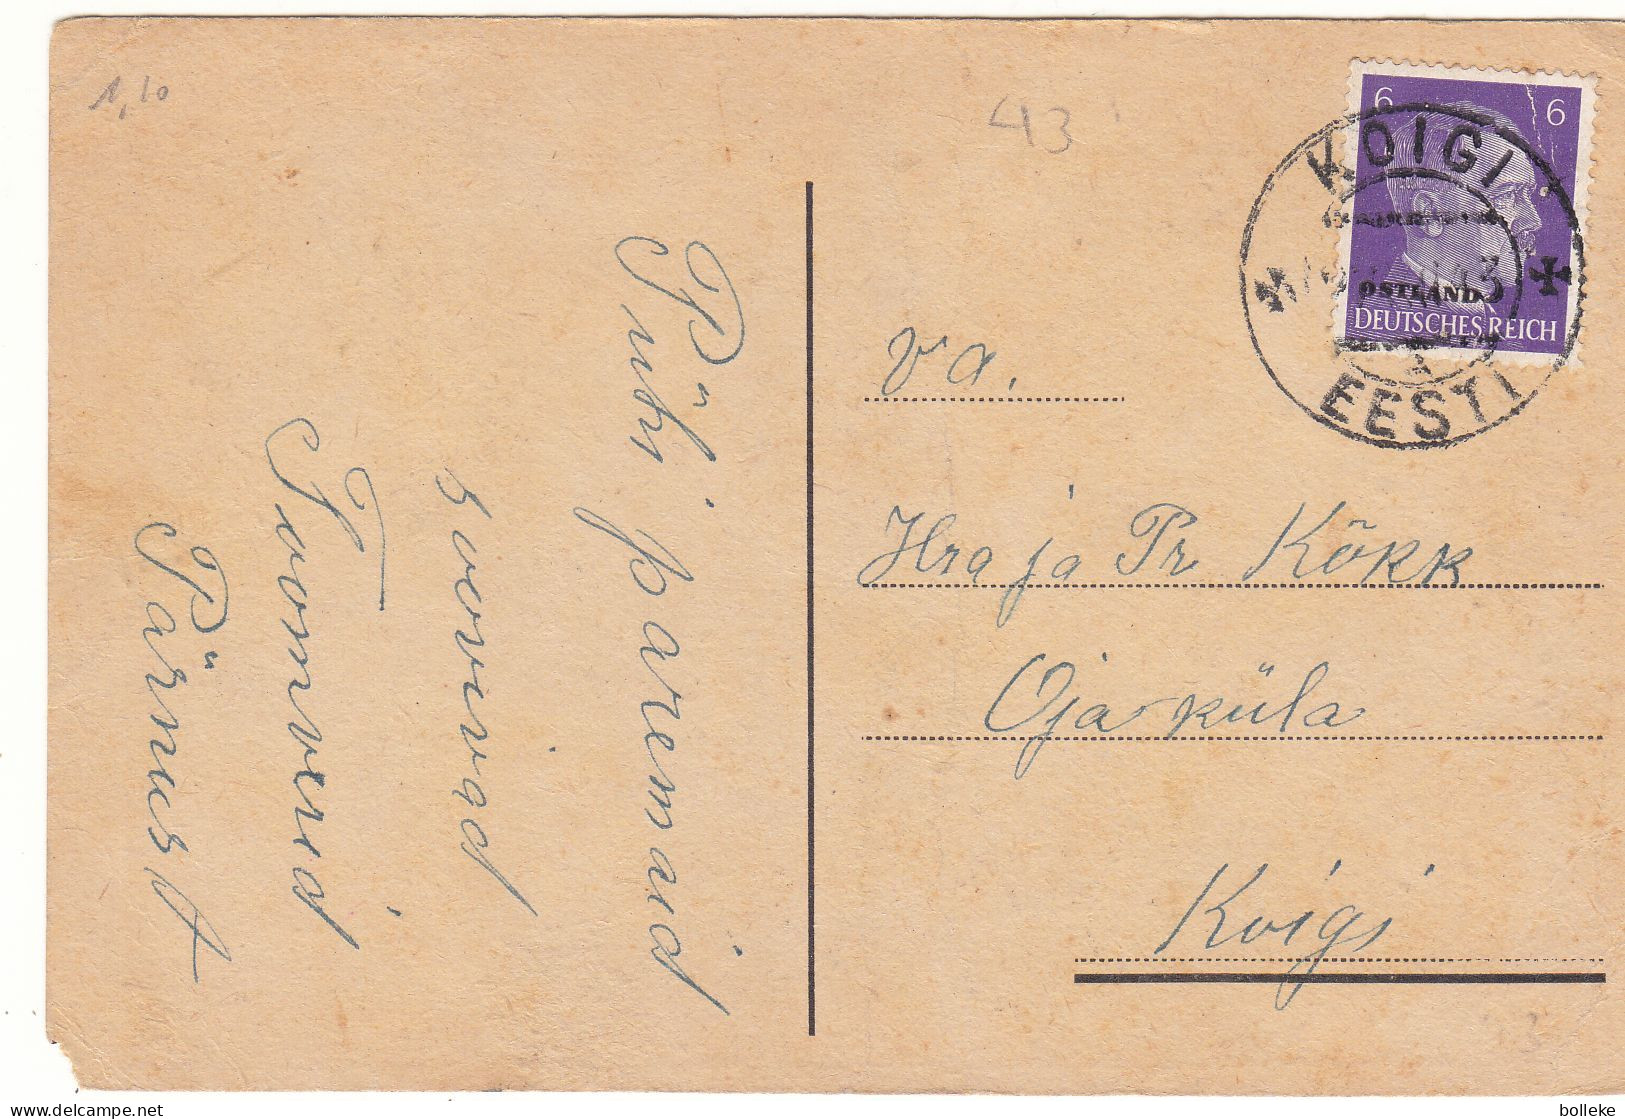 Allemagne - Ostland - Carte Postale De 1943 - Oblit Koigi - Exp Vers Koigi - Hitler - - Bezetting 1938-45